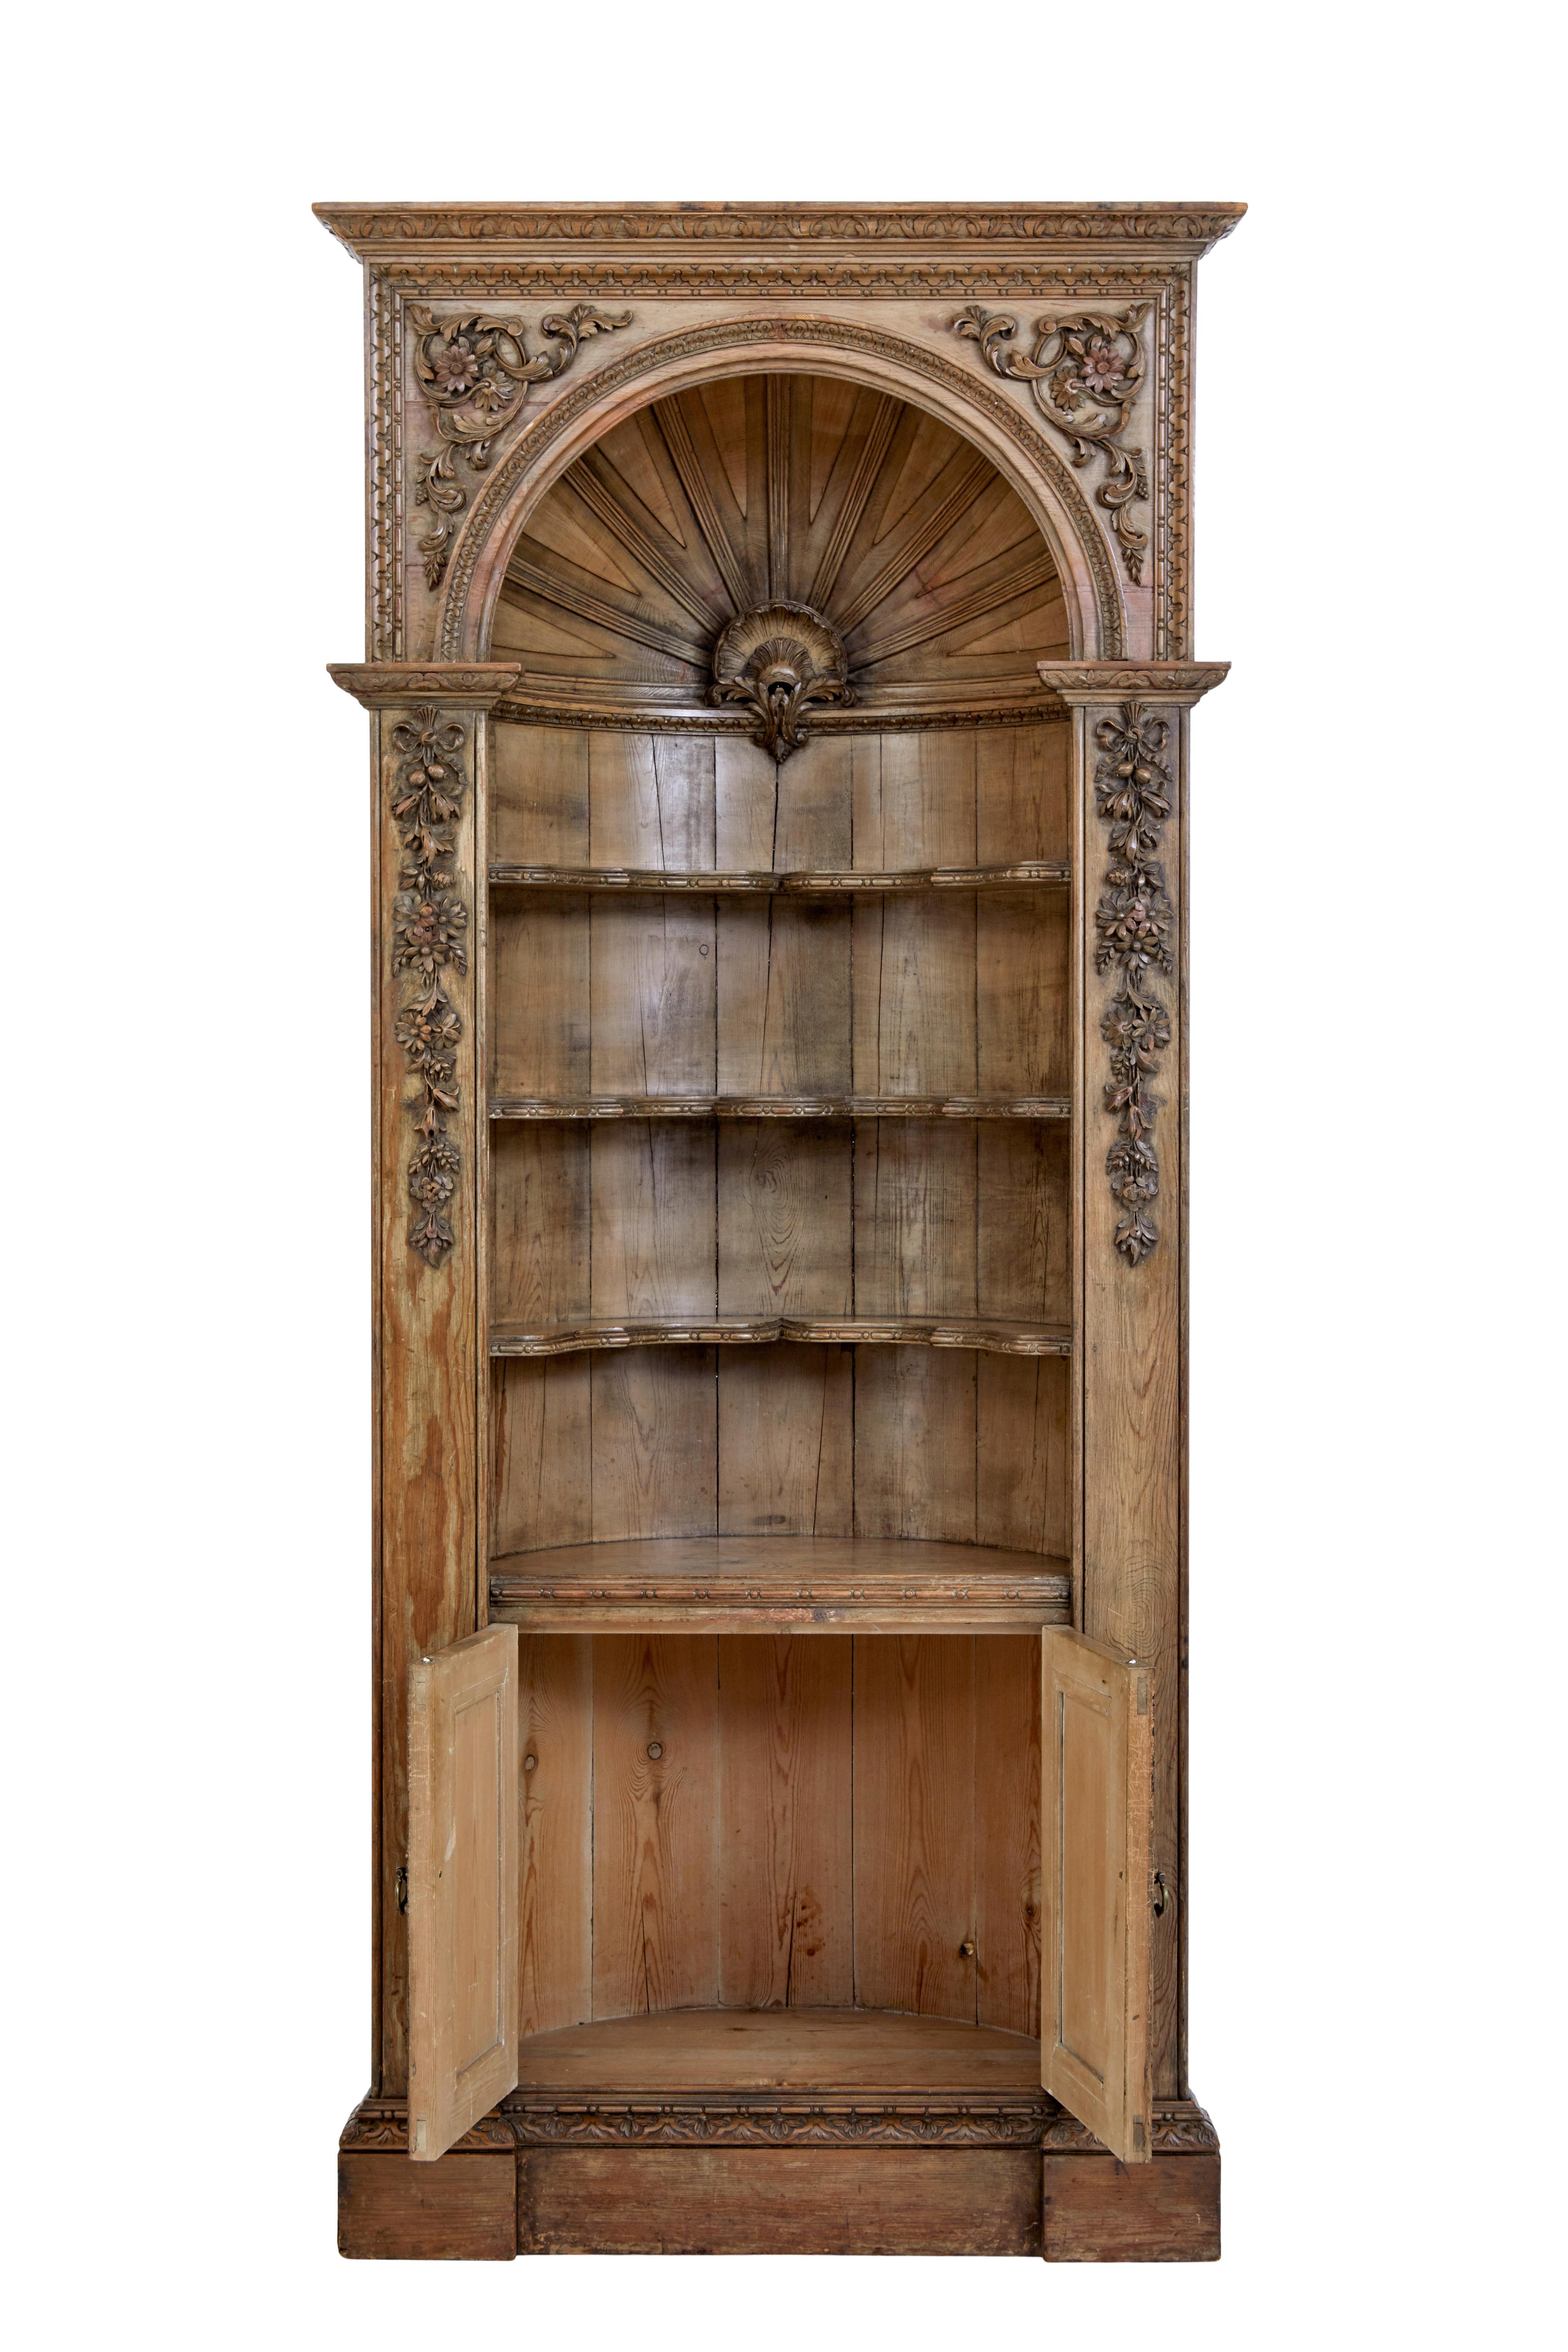 Magnifique meuble de rangement en pin sculpté du milieu du XVIIIe siècle, vers 1760.

Pièce d'excellente qualité qui aurait été installée dans une niche murale, avec le cadre extérieur affleurant au mur.

Corniche architecturale sculptée, décorée de